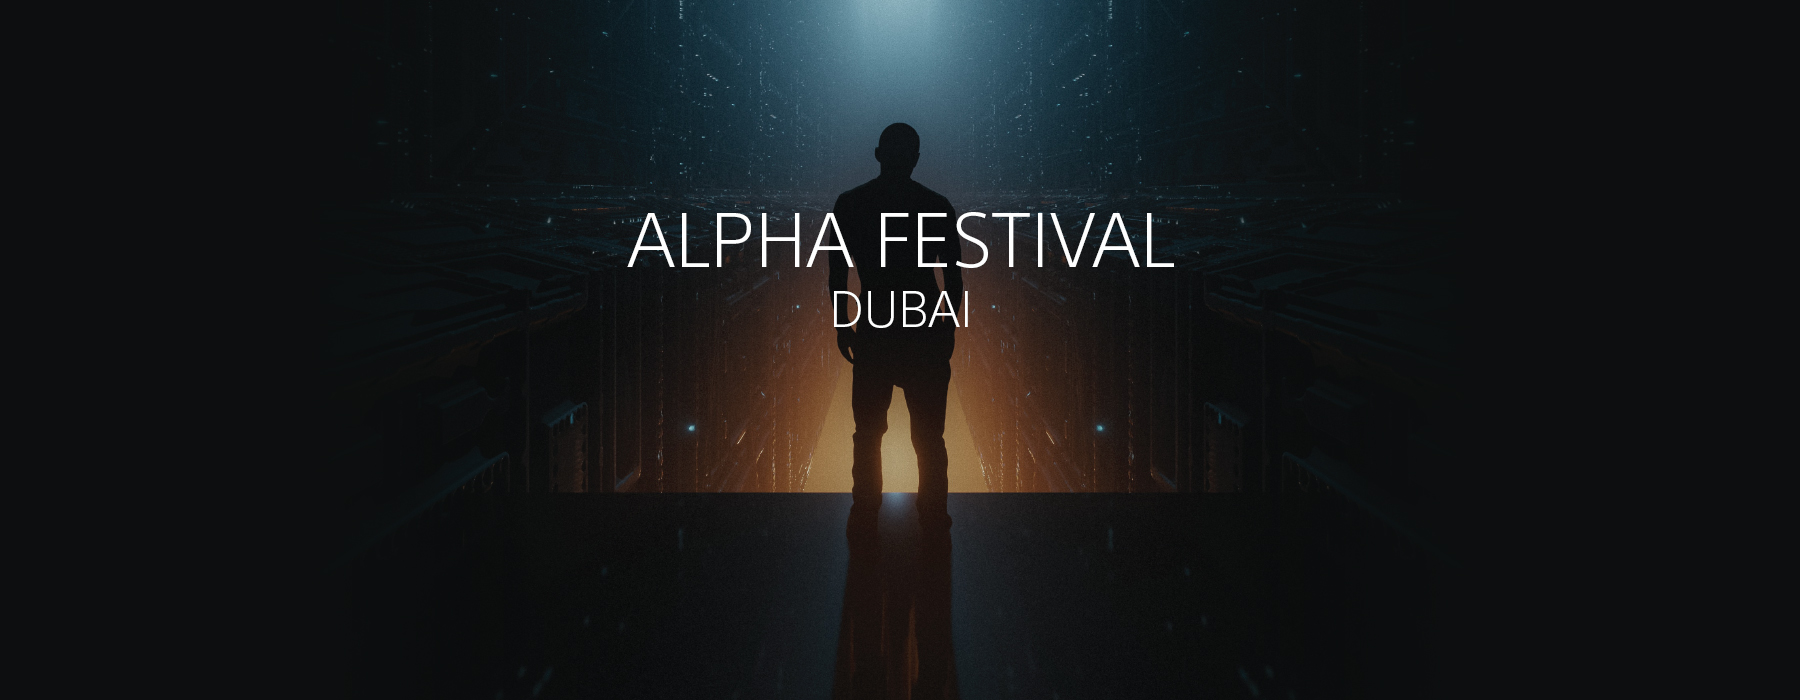 Sony Alpha Music Festival Dubai